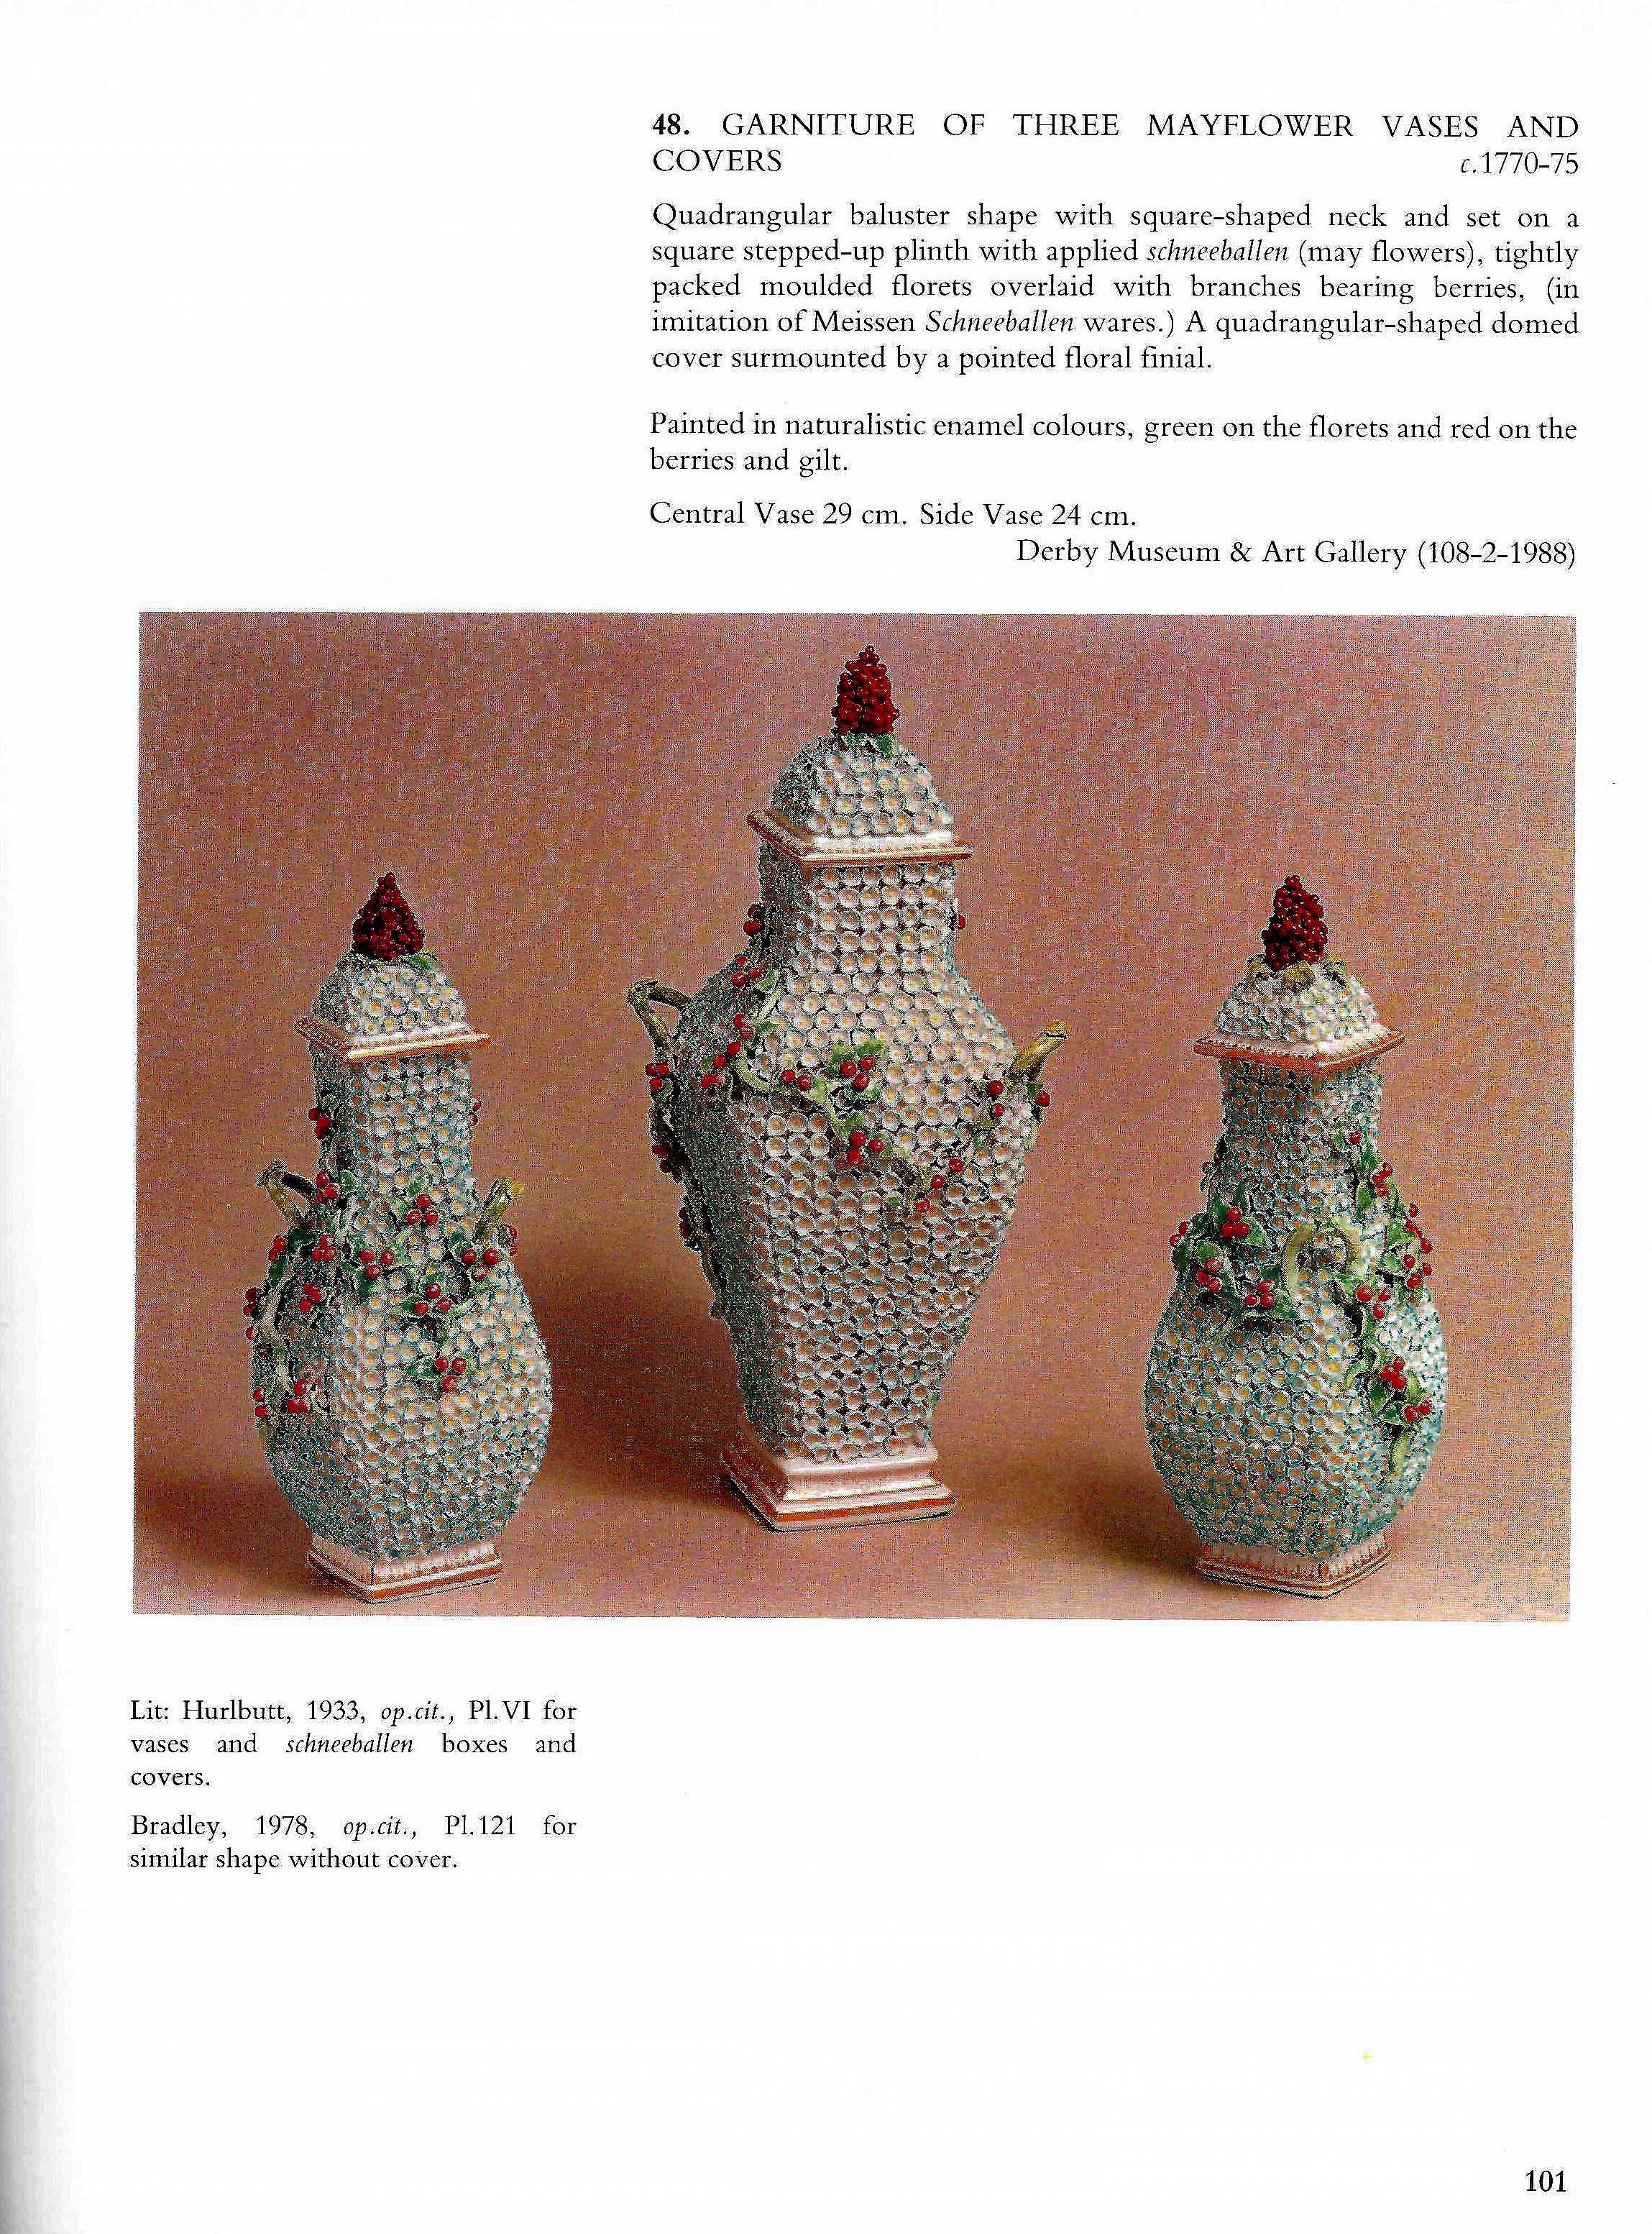 Vase de forme en porcelaine de Derby avec décoration de fleurs de mai, 
vers 1770-1775
(Ref : VM0041)

Le vase et le couvercle de forme balustre à quatre côtés, avec un col et un pied de forme carrée, sont conçus avec un motif de multiples